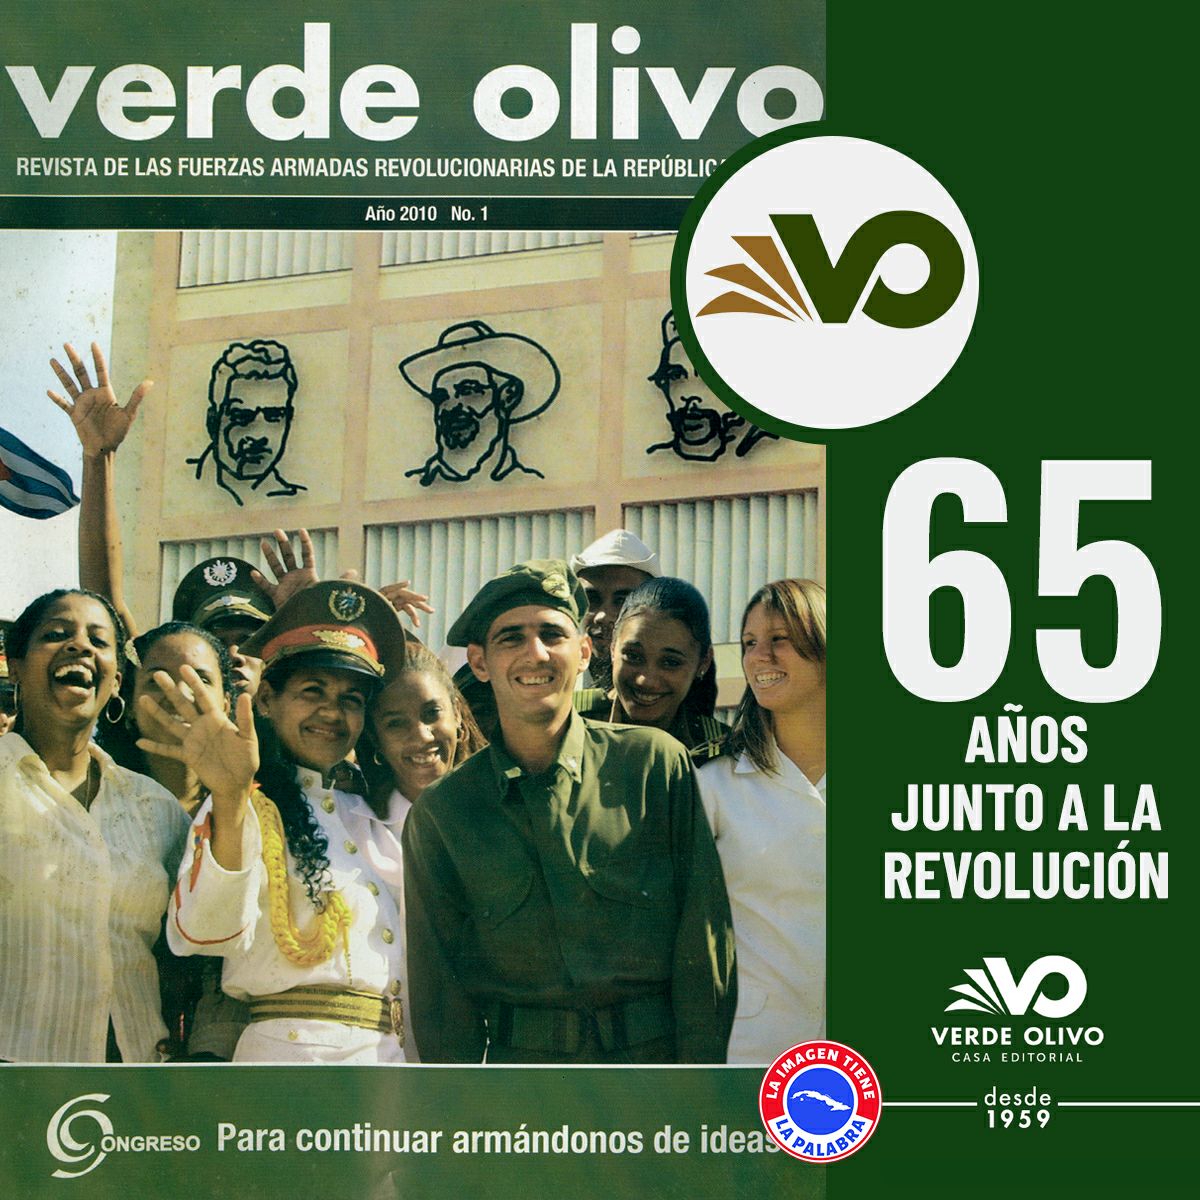 Verde Olivo siempre ha acompañado a los jóvenes de las FAR en sus diferentes actividades, gracias por su trabajo, gracias por la dedicación a la defensa de la Patria. Muchas felicidades en su aniversario 65. #CubaViveEnSuHistoria